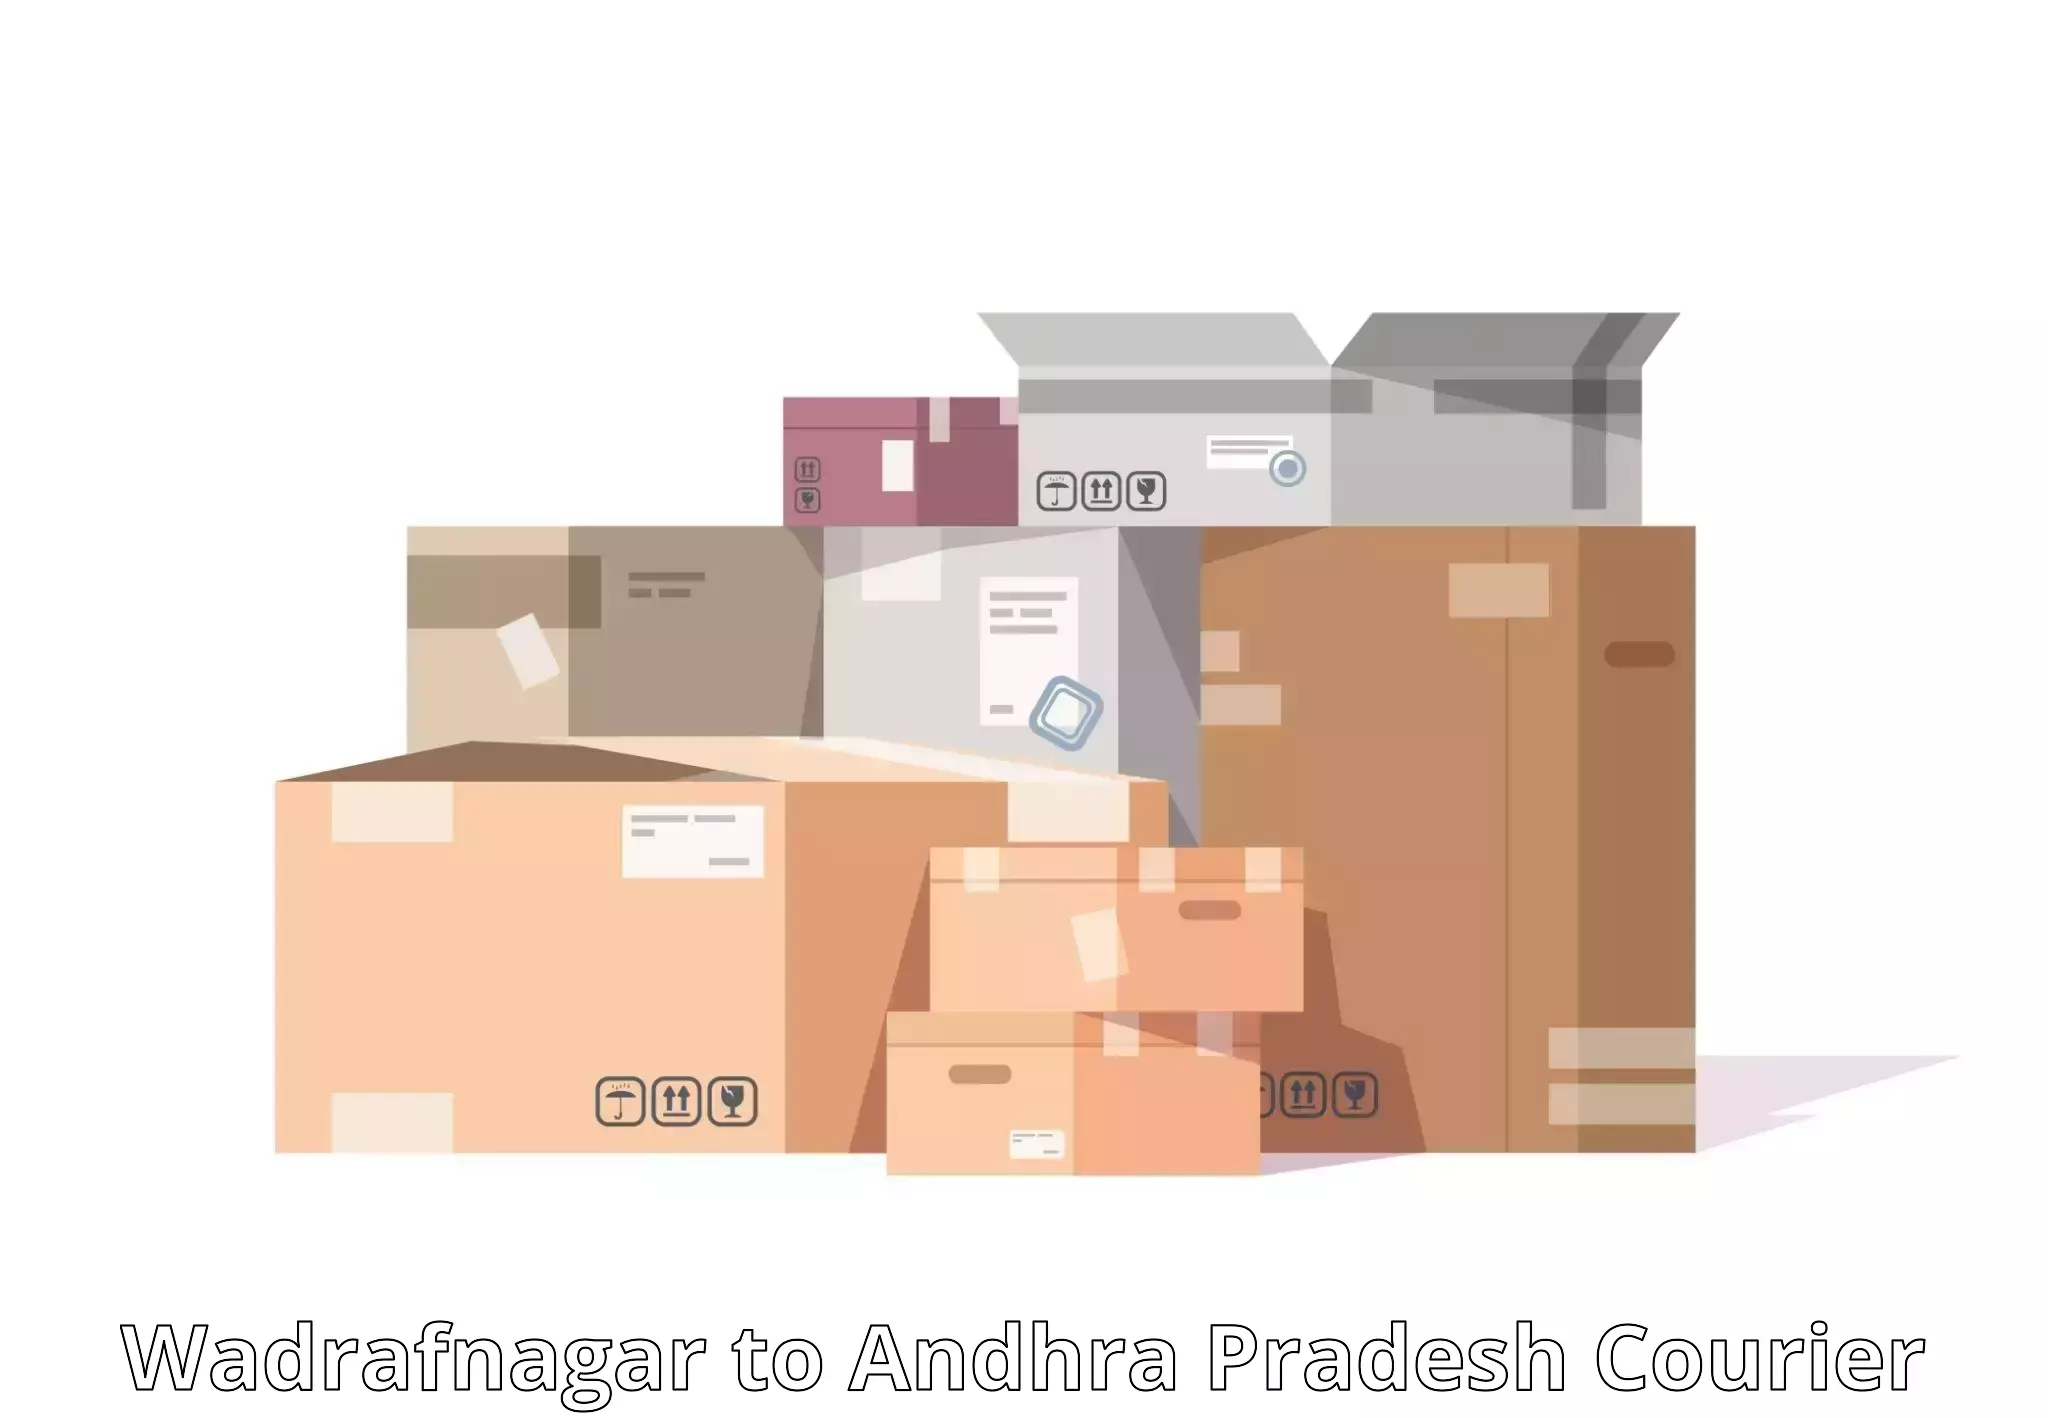 Cost-effective freight solutions Wadrafnagar to Sarvepalli Nellore